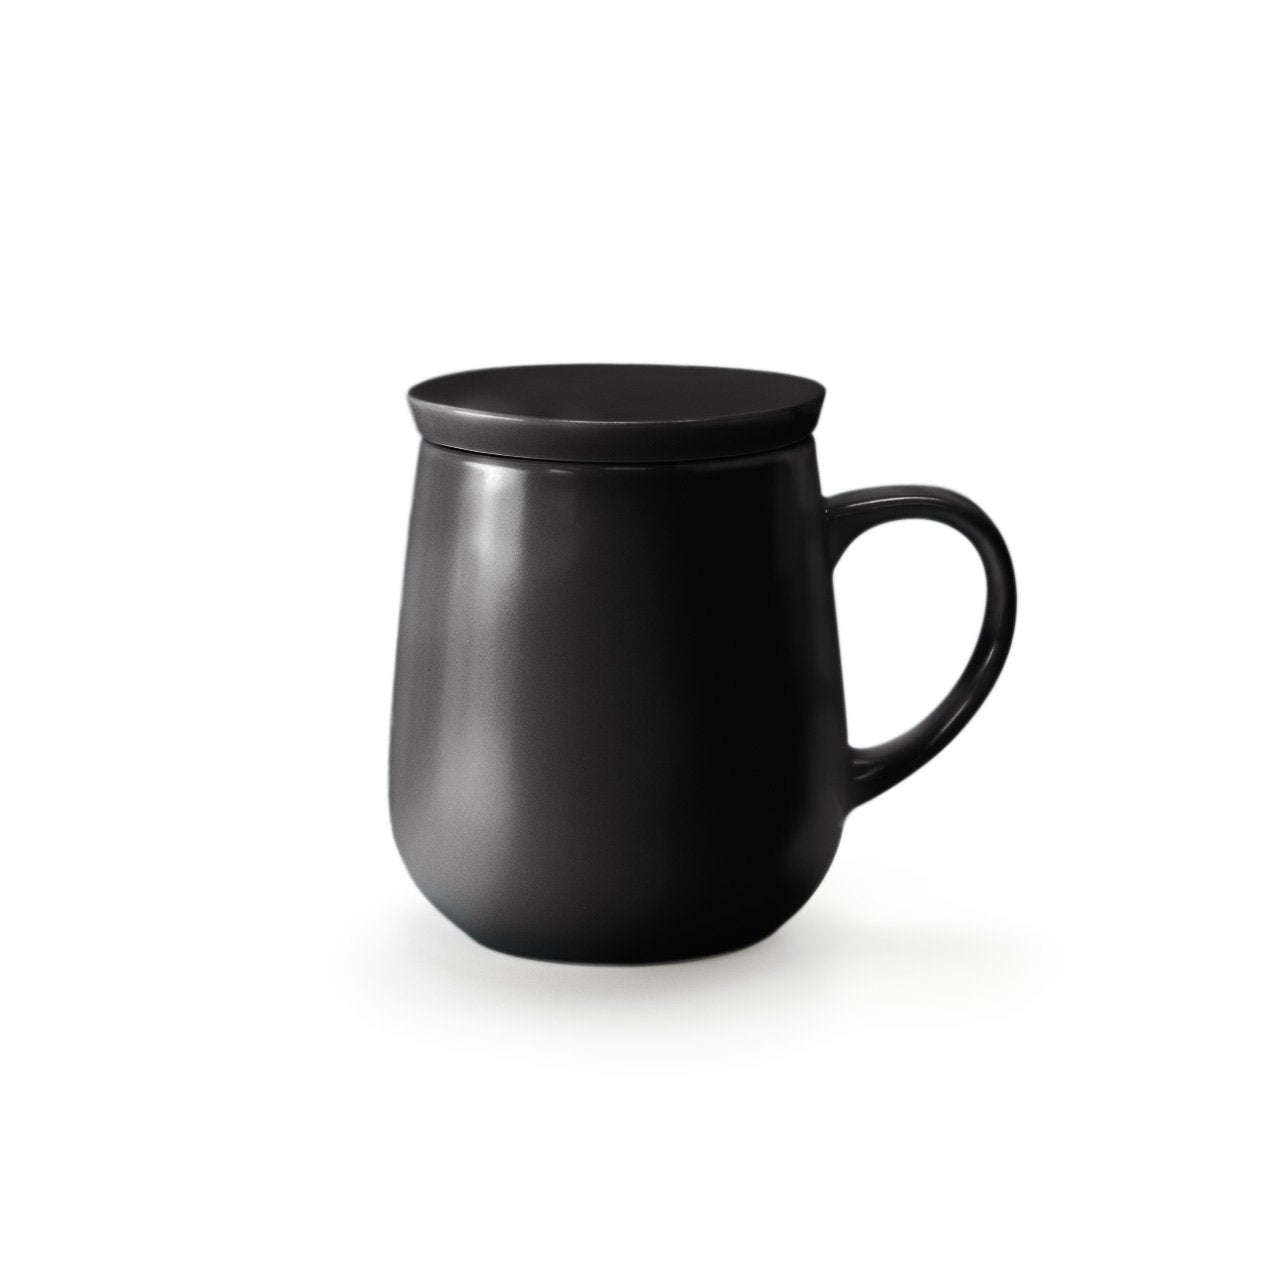 Small black mug with lid